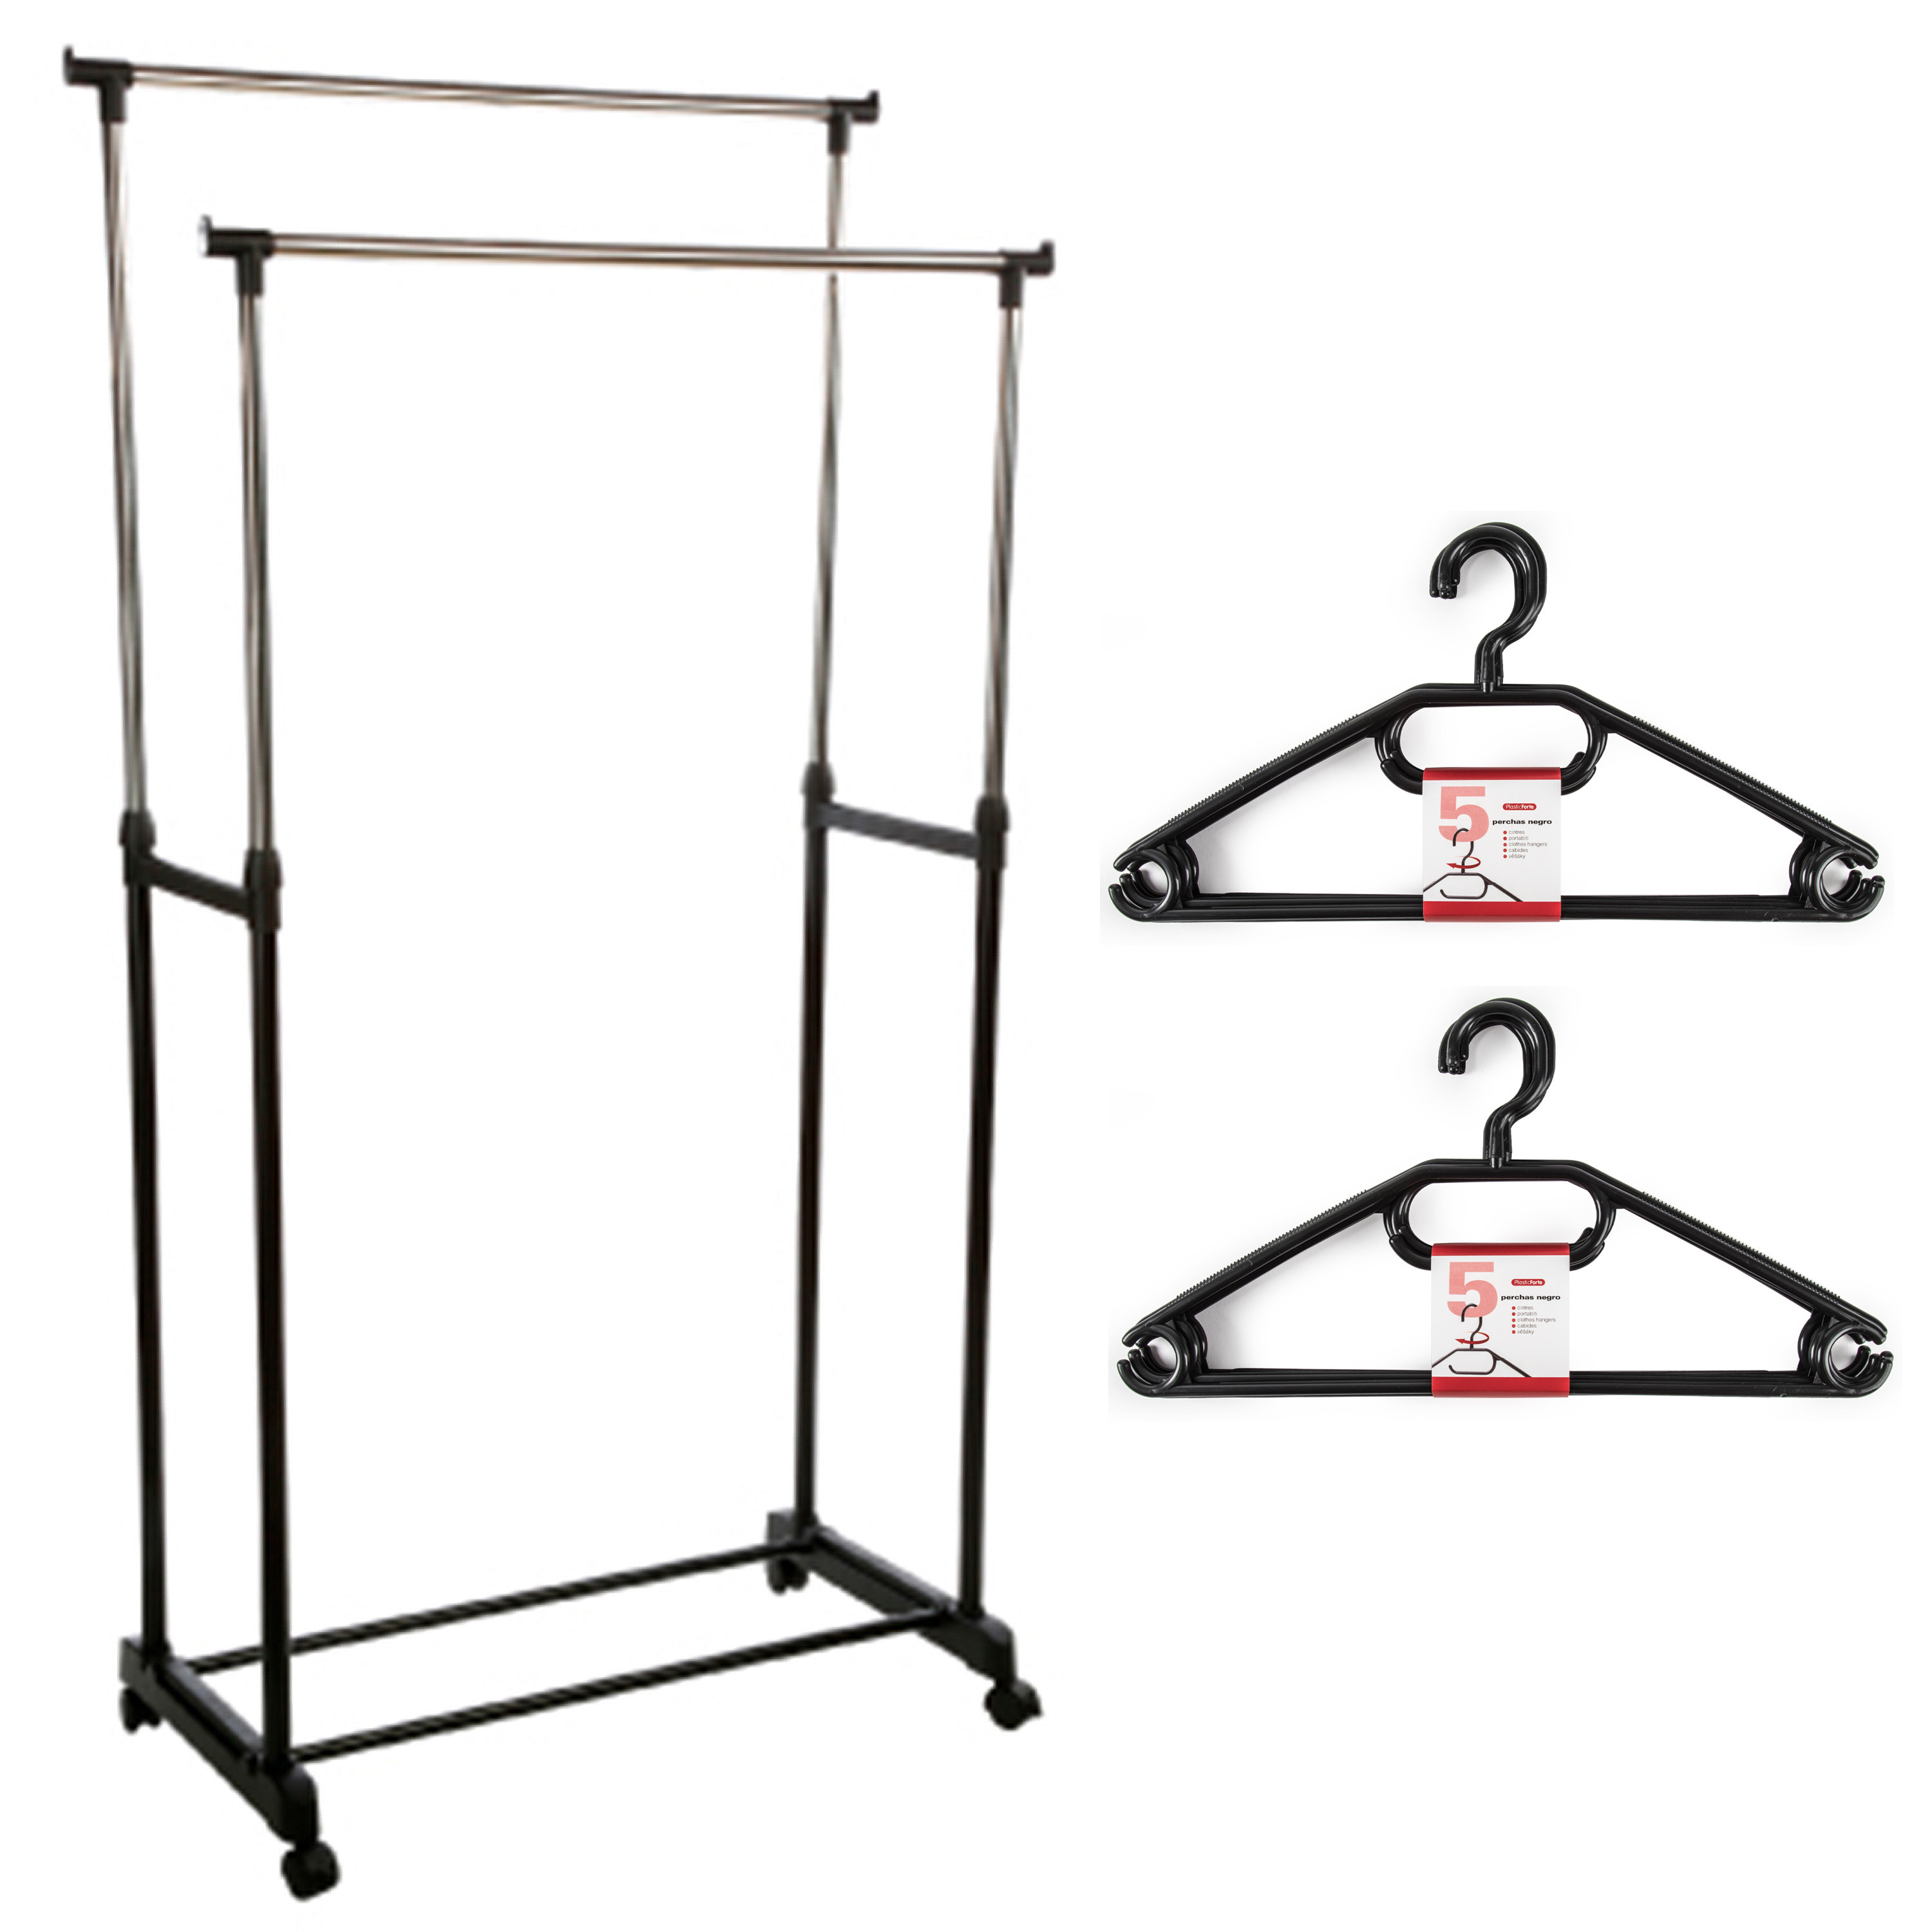 Kledingrek met kleding hangers dubbele stang kunststof-metaal zwart 80 x 42 x 170 cm